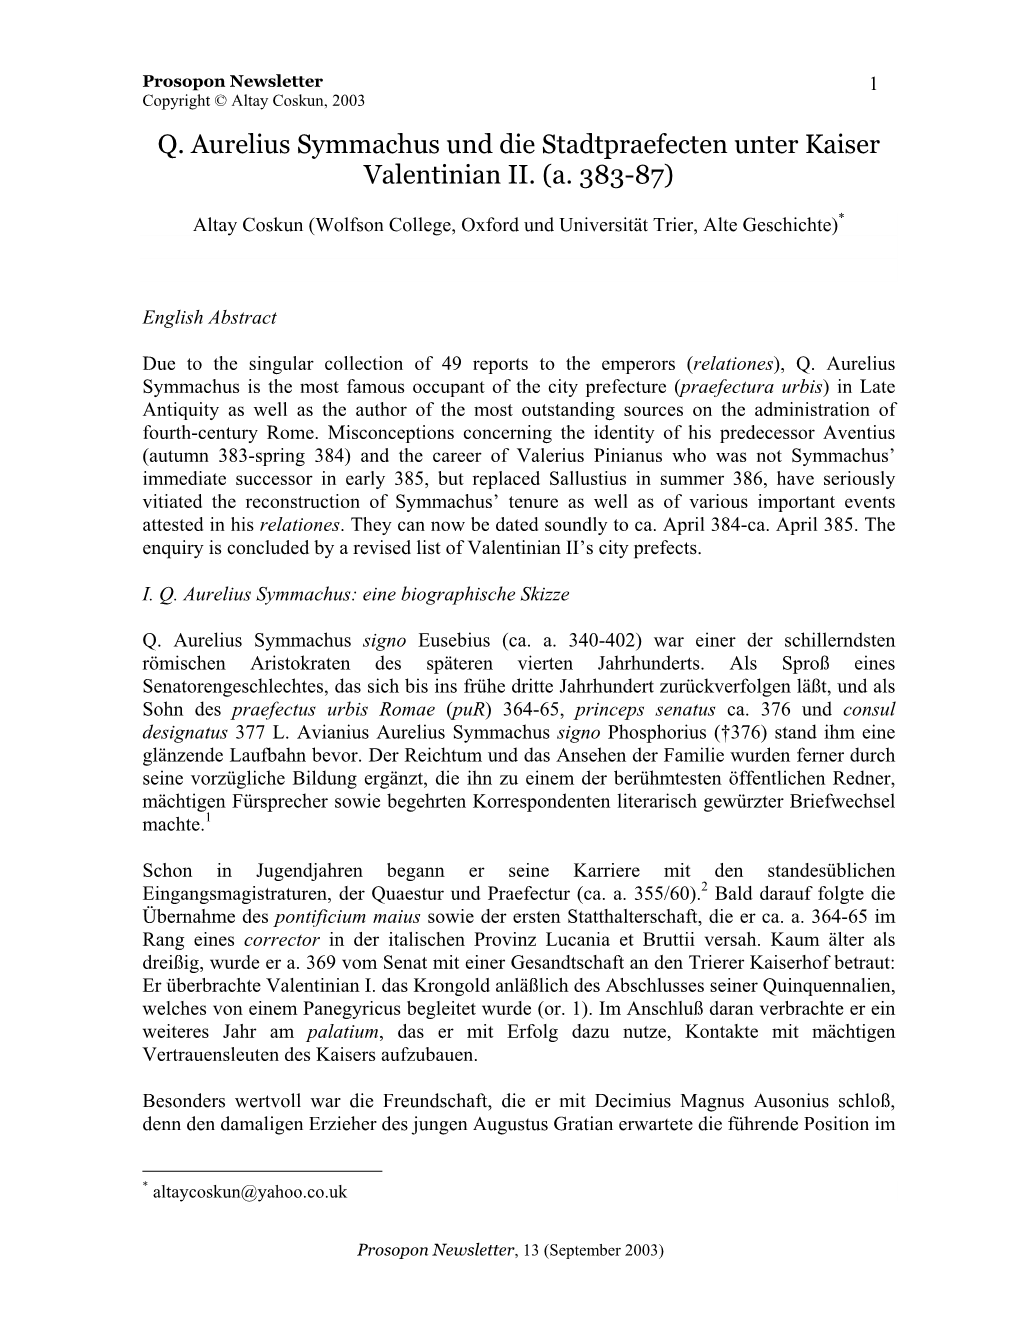 Q. Aurelius Symmachus Und Die Stadtpraefecten Unter Kaiser Valentinian II